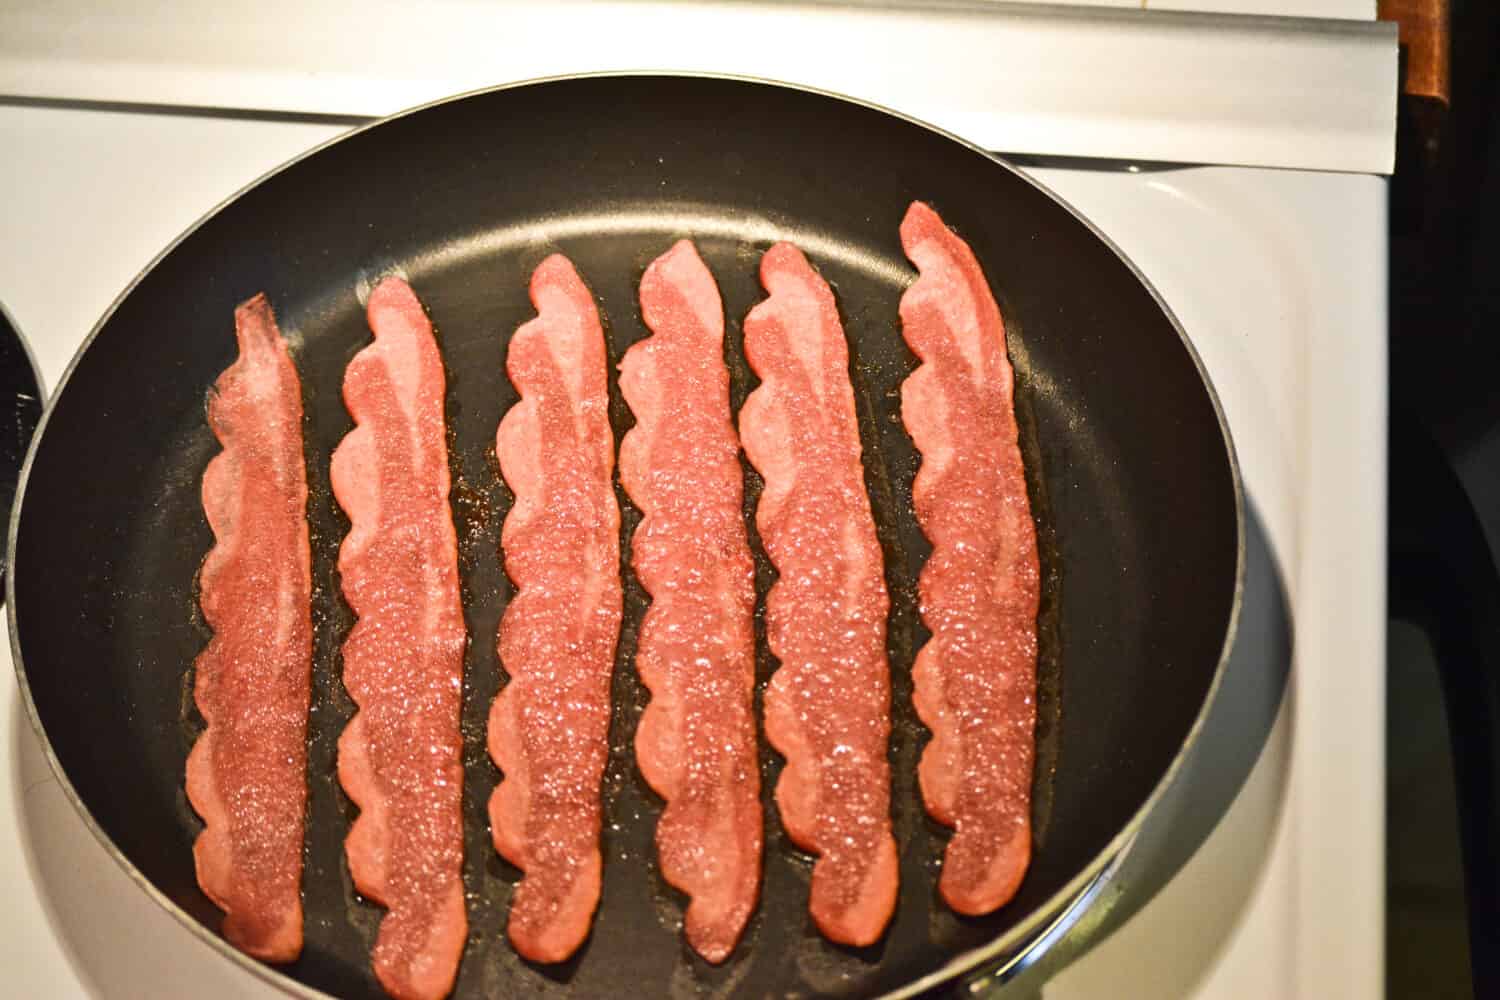 Turkey bacon in frying pan